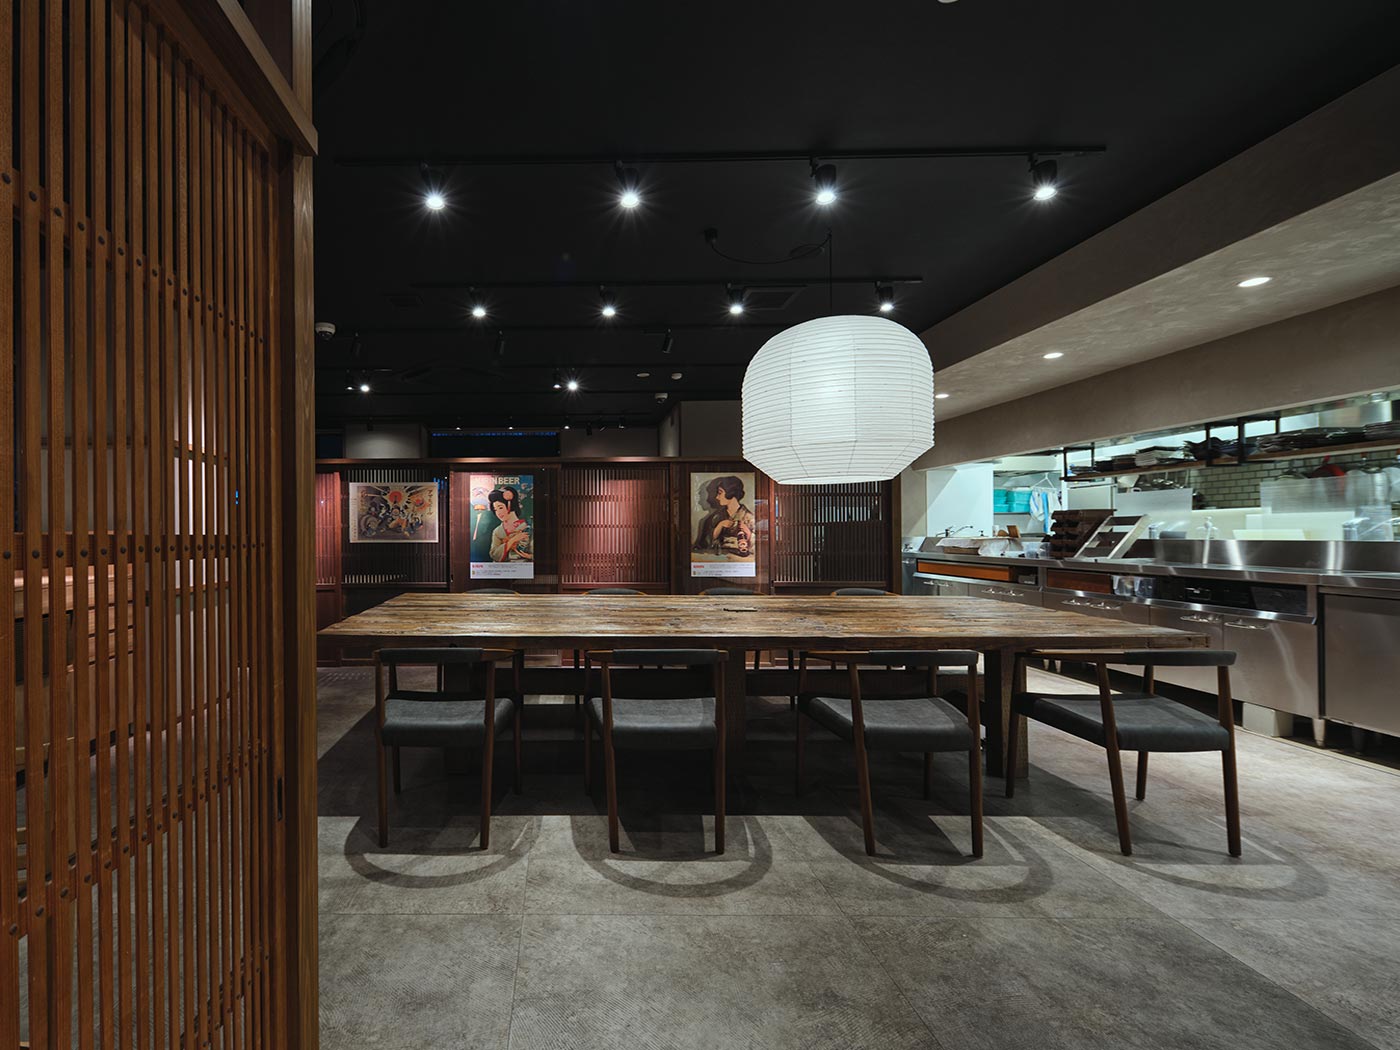 滋賀県にある草津第一ホテル内の和風居酒屋「つたい」のビッグテーブル席を用いた店舗デザイン事例